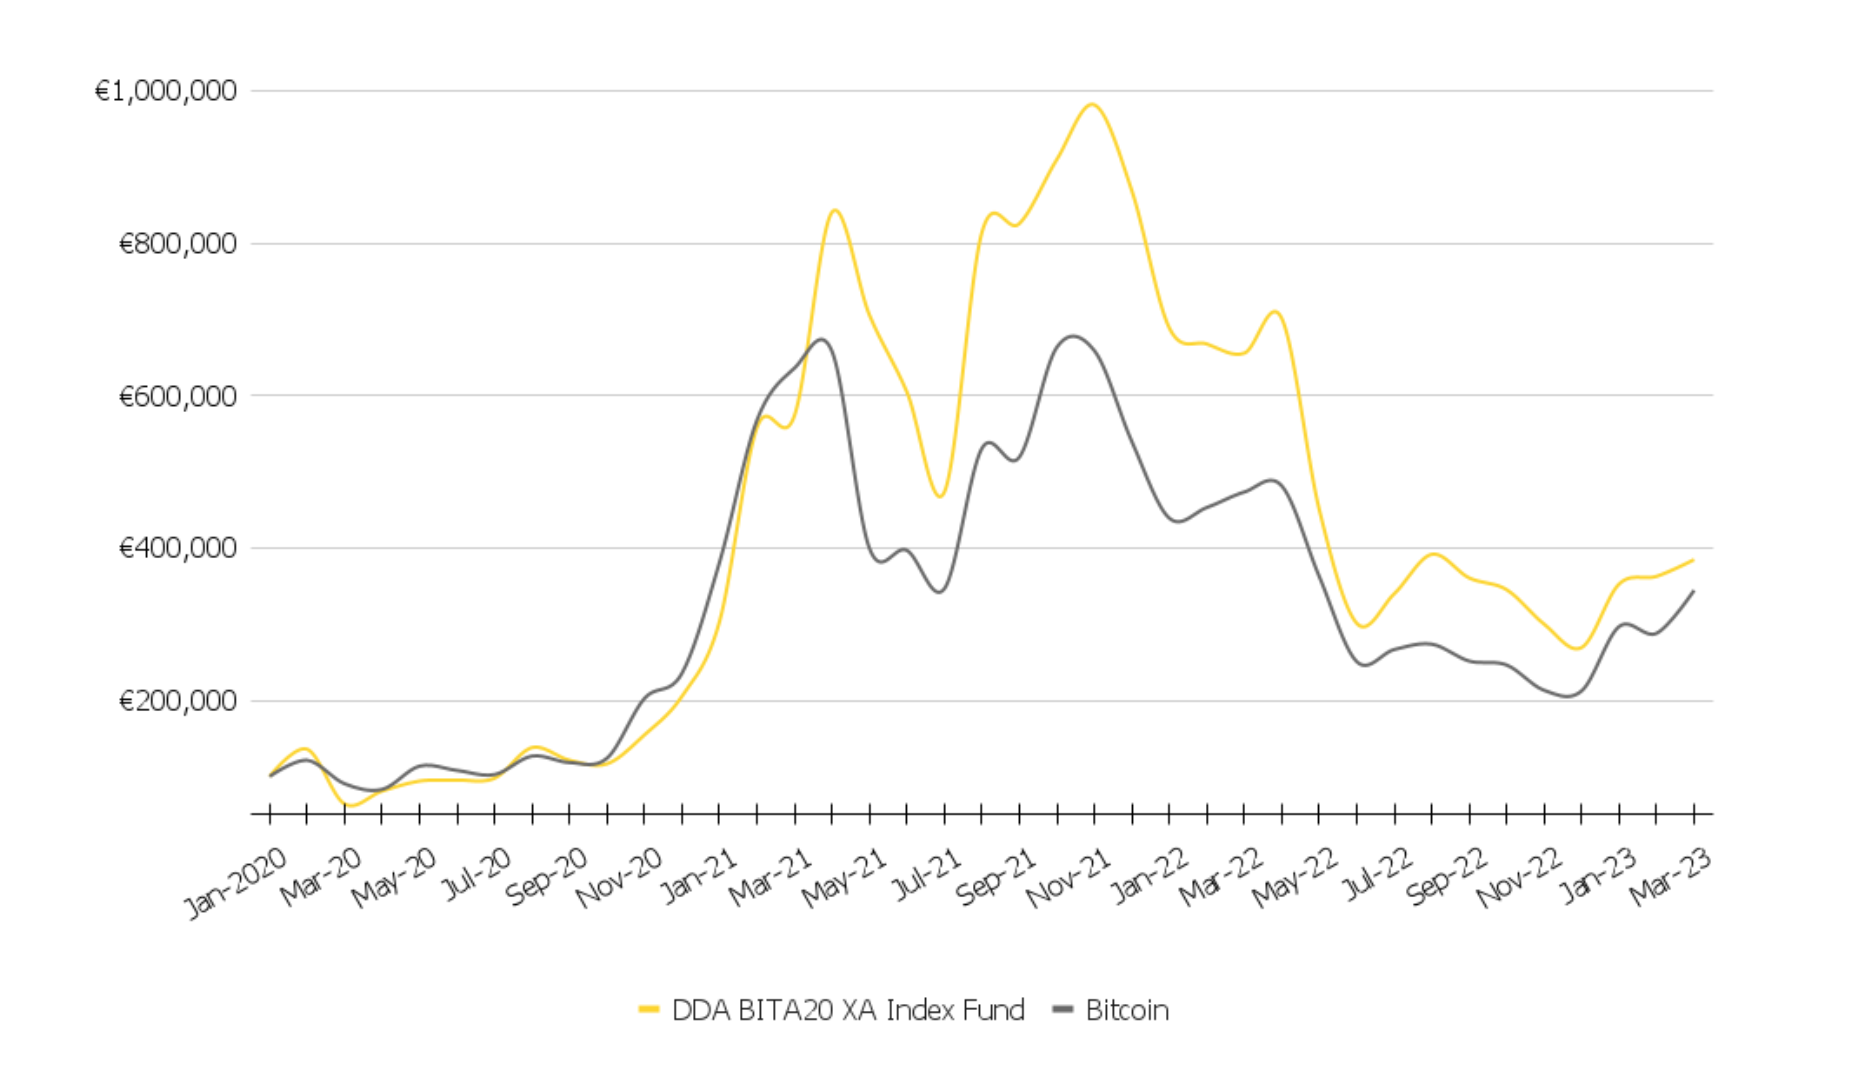 DDA BITA20 XA
Crypto Asset Index Fund Performance, Index fund Performance vs Bitcoin, Crypto index fund